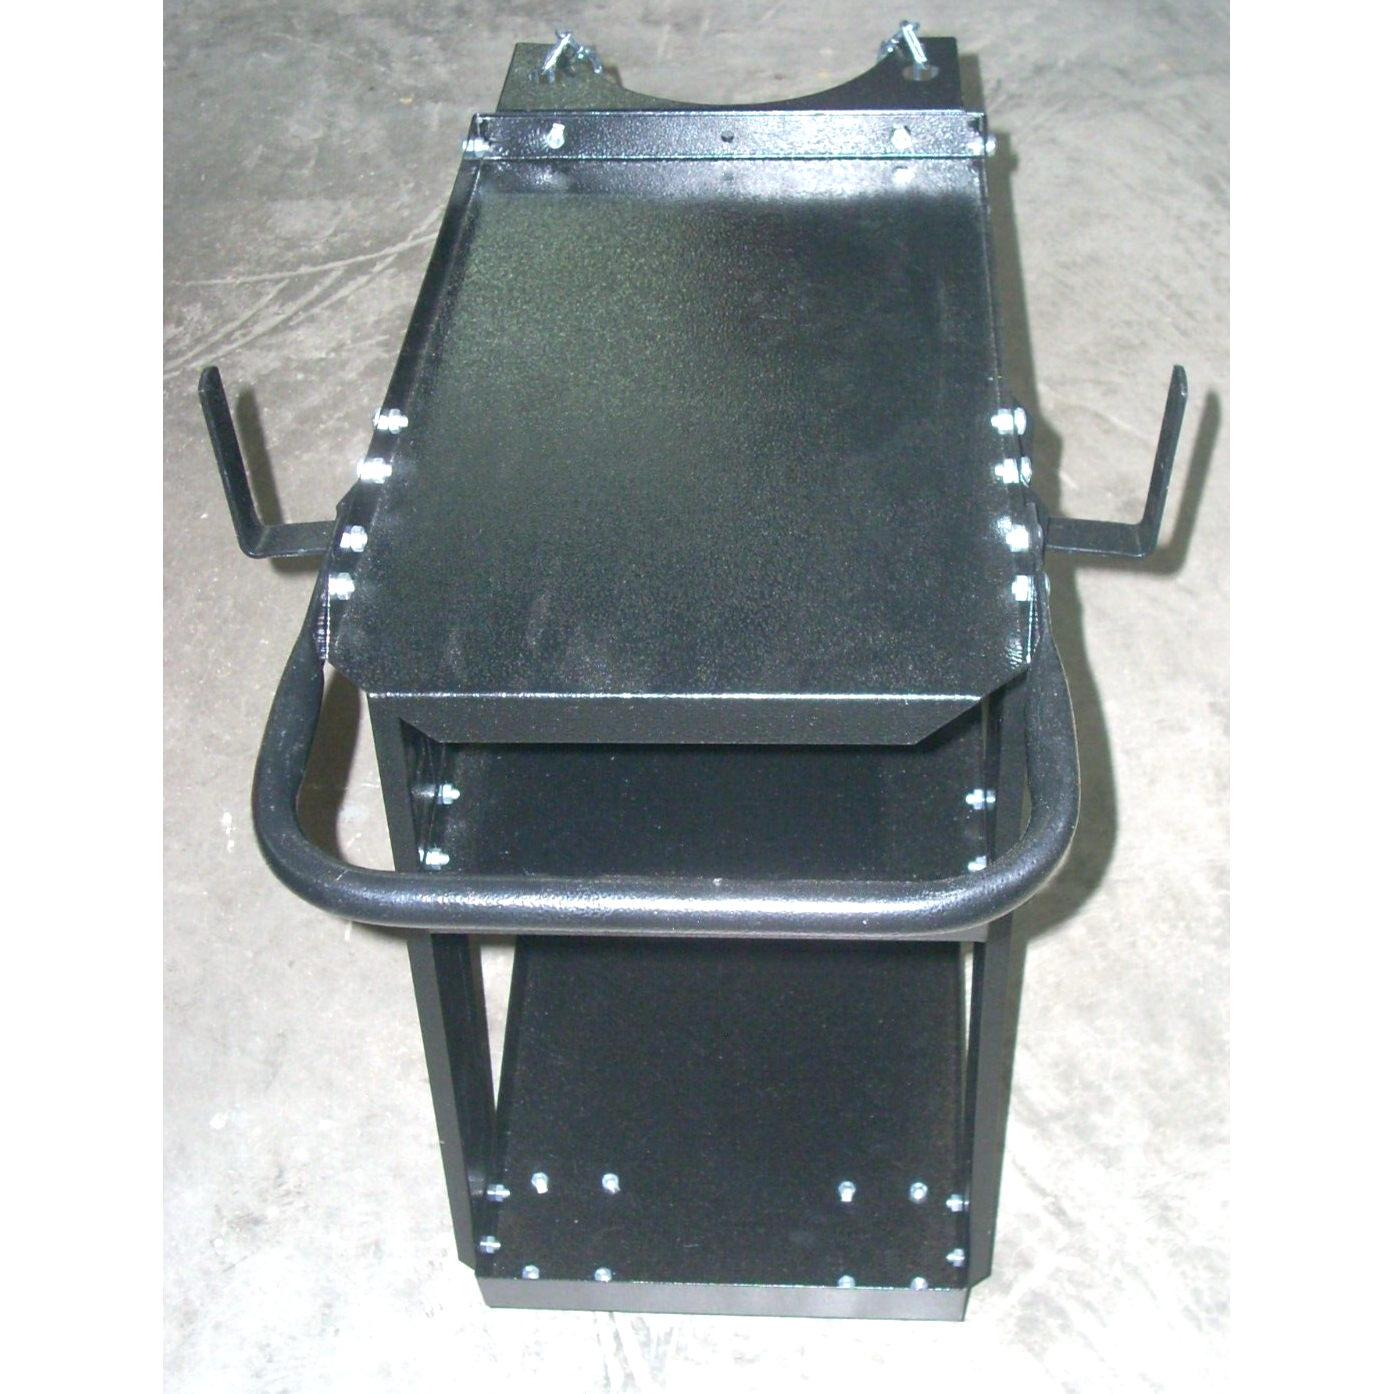 Deluxe Steel V3 Mig Welding Cart for Mig Tig Plasma Machine Fits Welder & Tank